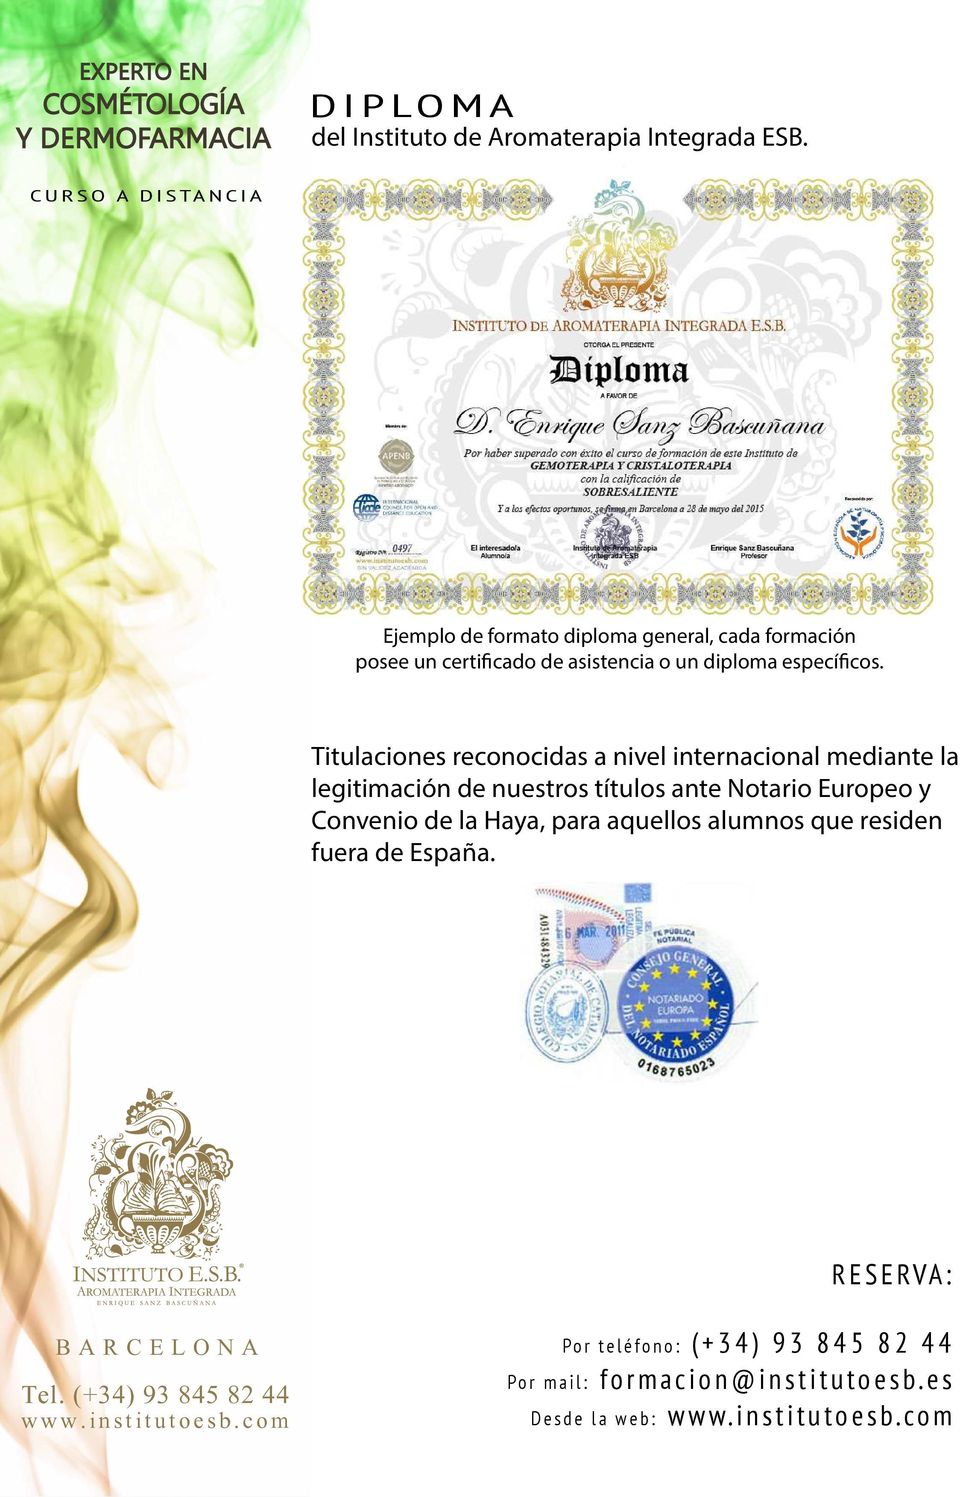 Titulaciones reconocidas a nivel internacional mediante la legitimación de nuestros títulos ante Notario Europeo y Convenio de la Haya,